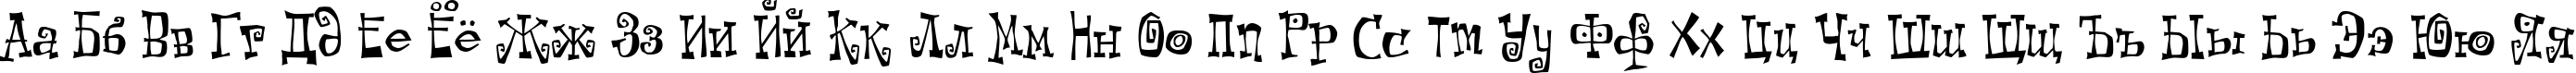 Пример написания русского алфавита шрифтом Kot Leopold